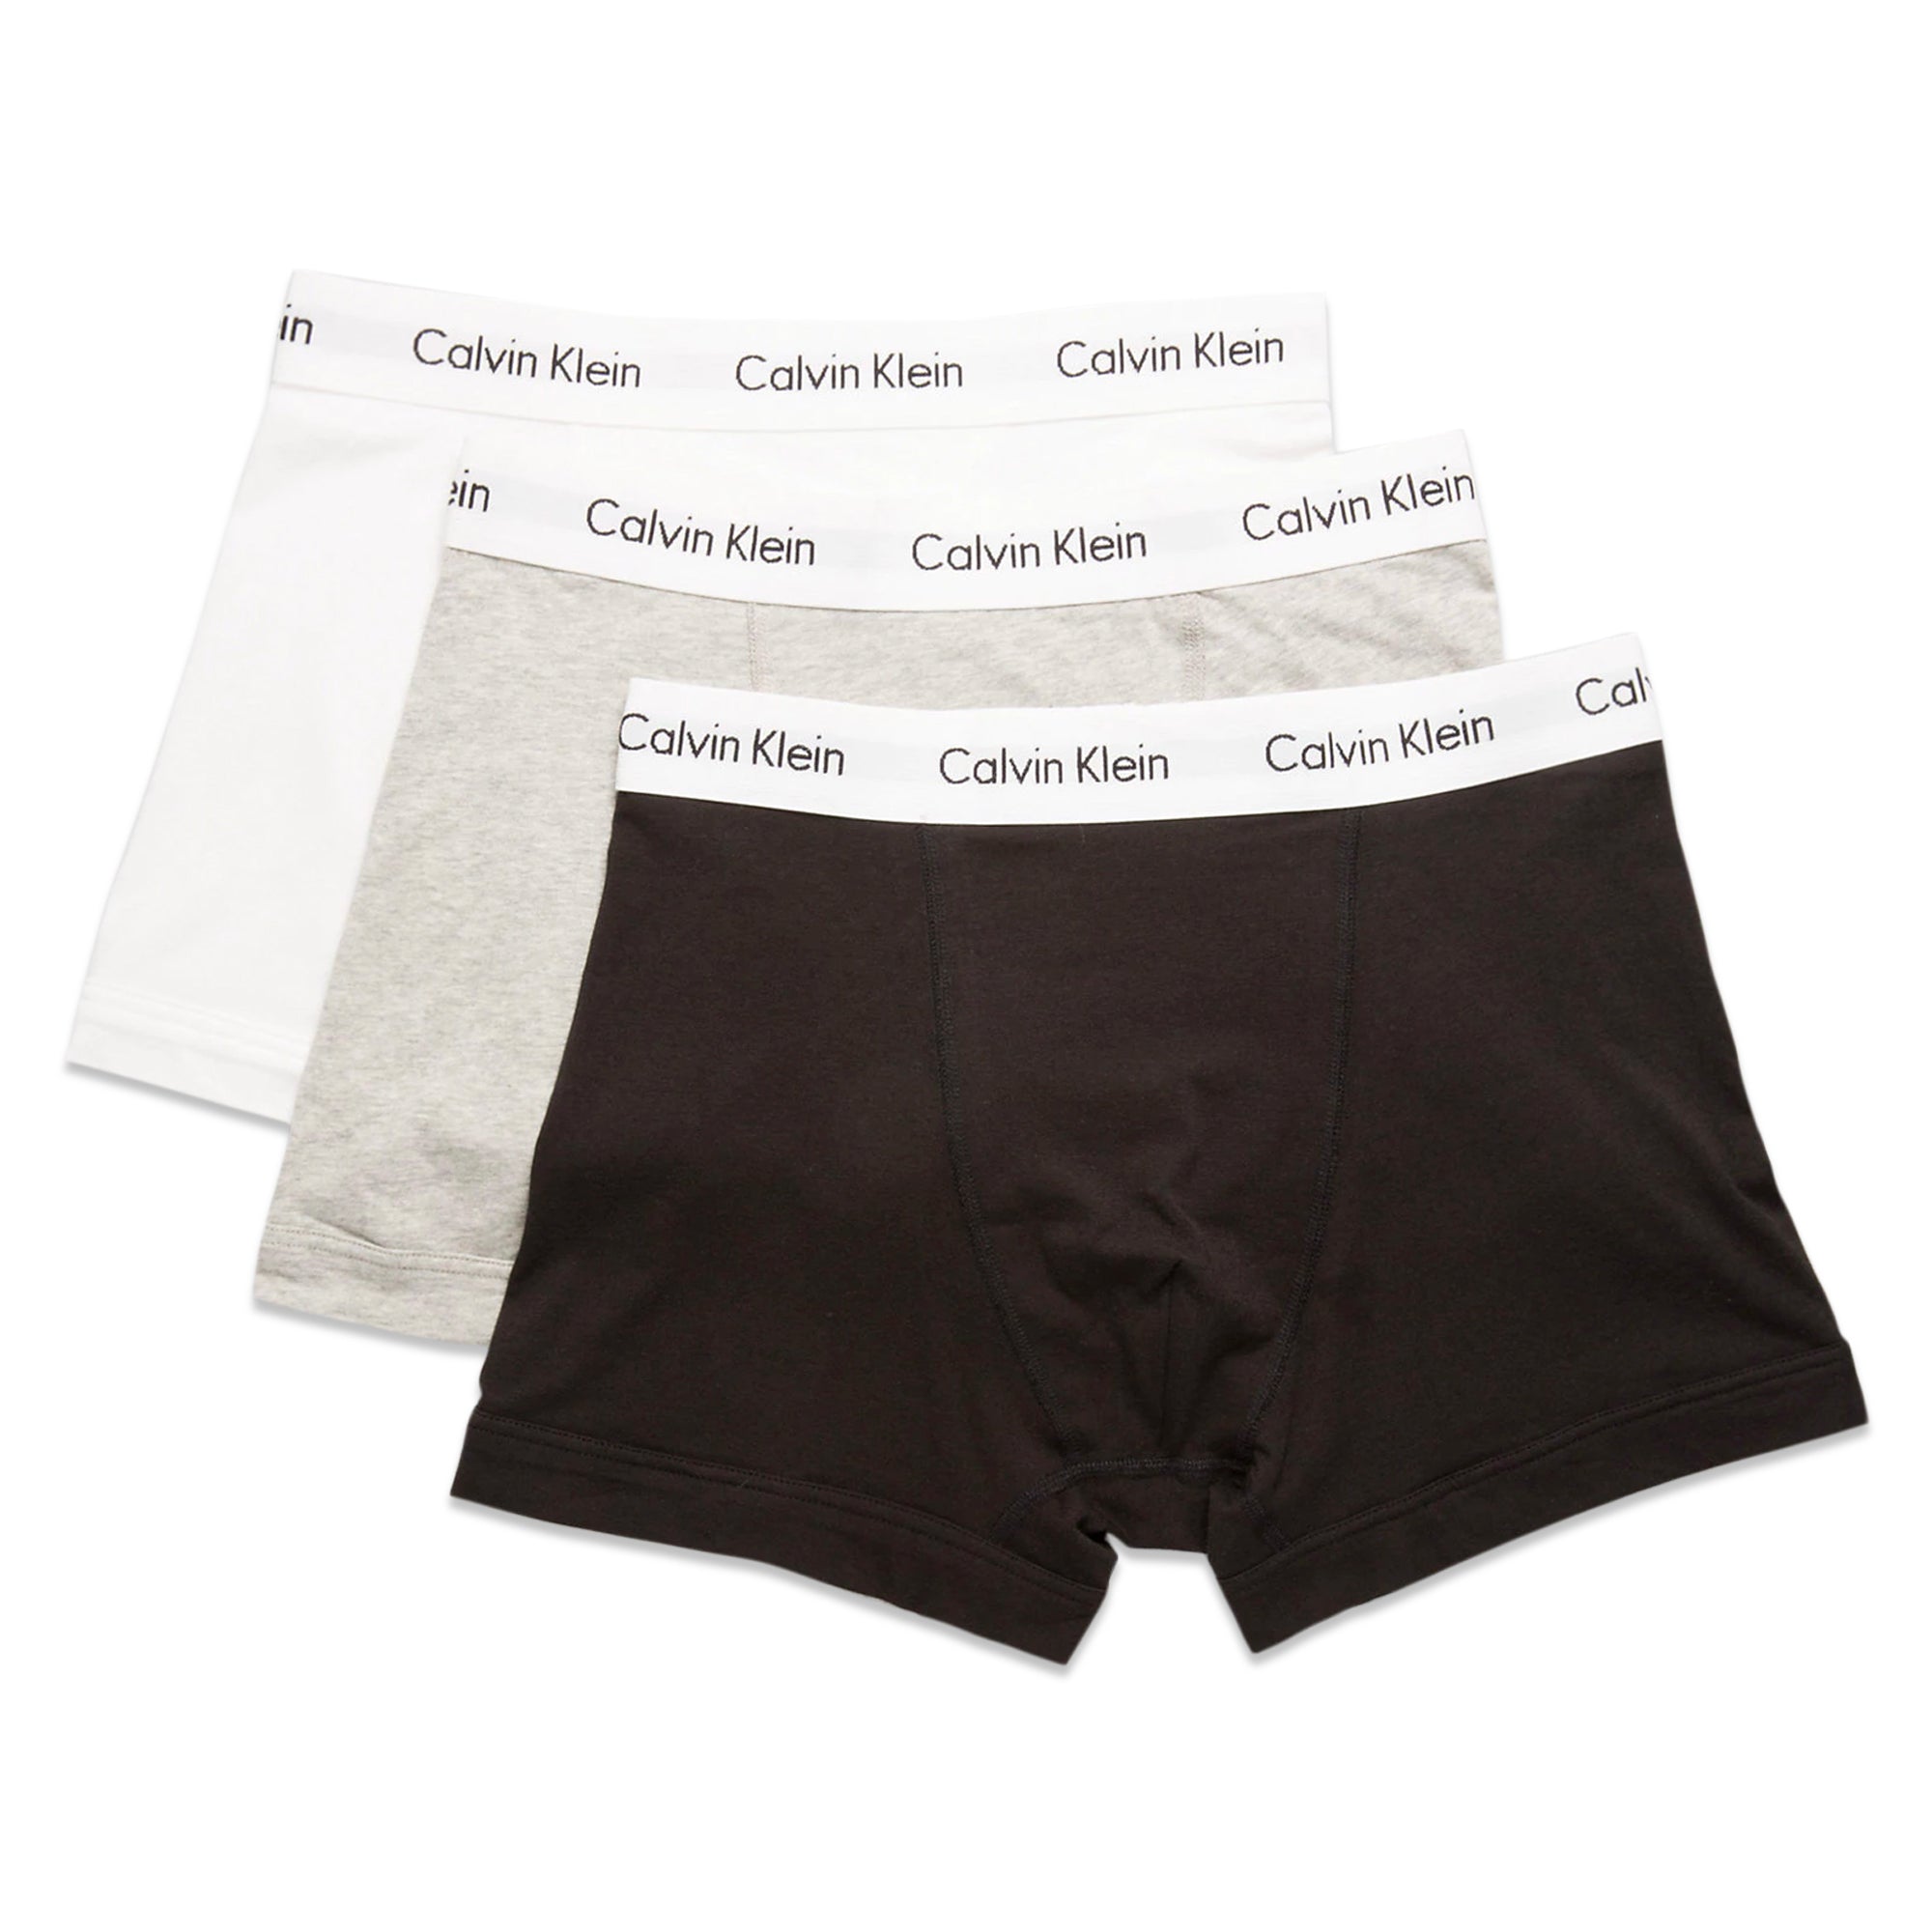 Calvin Klein Cotton Stretch Trunks - Black/White/Grey - Arena Menswear